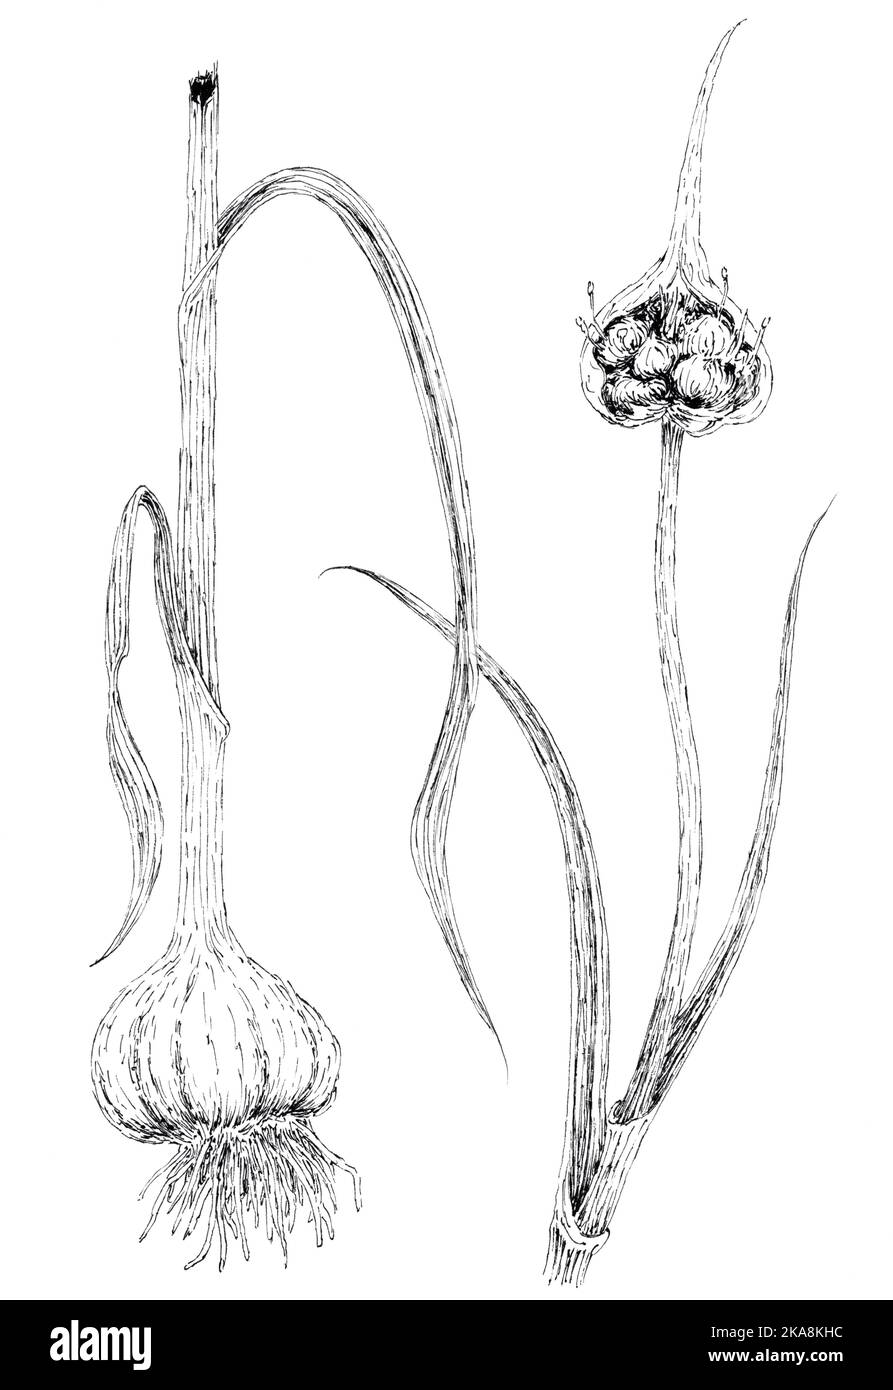 Pianta di aglio (Allium sativum) disegno botanico. Inchiostro sulla carta. Foto Stock